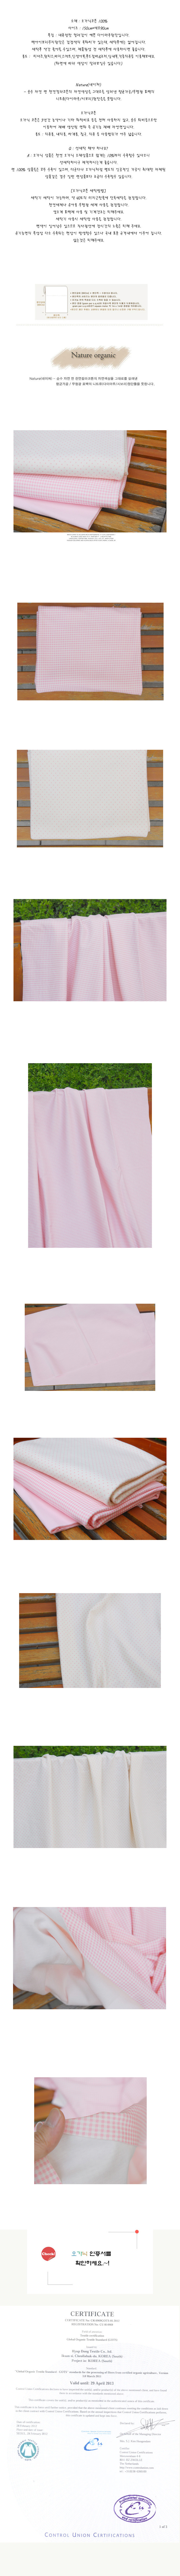 네이쳐오가닉]양면다이마루-도트앤체크(핑크)